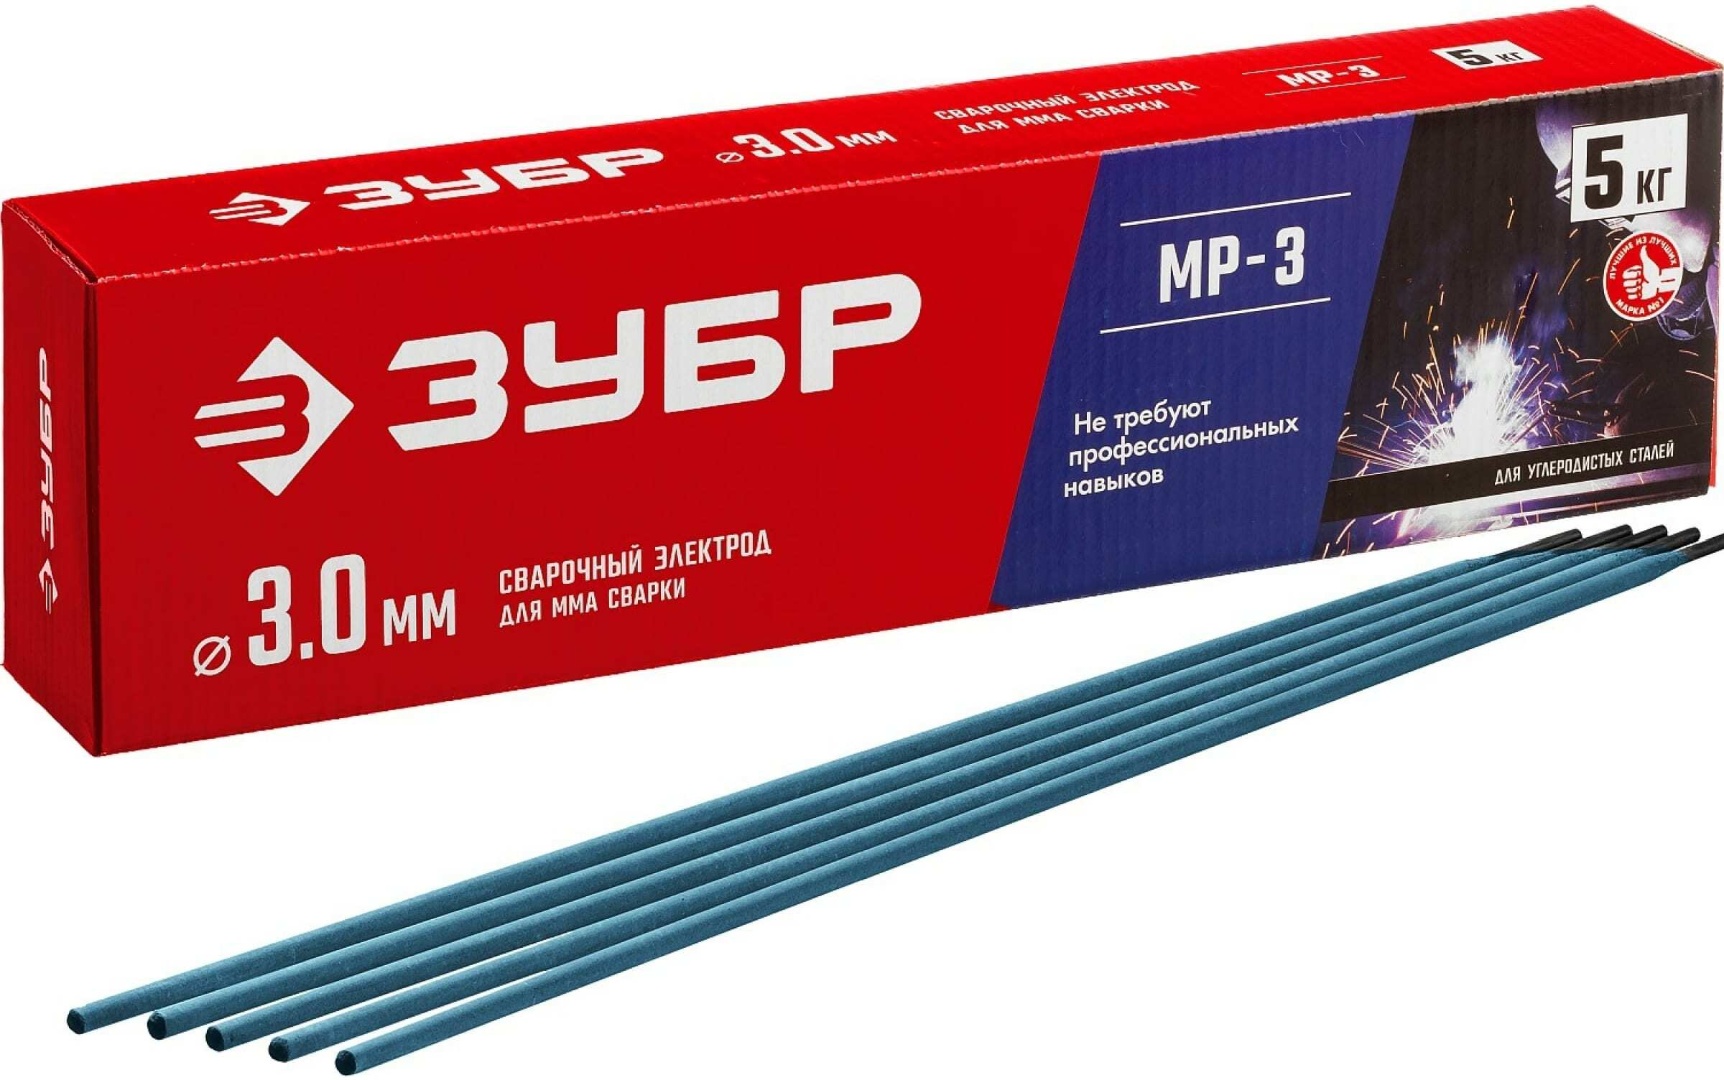 Купить Зубр электрод сварочный мр-3 с рутиловым покрытием, для мма сварки, d 3.0x350 мм, 5 кг в коробке.